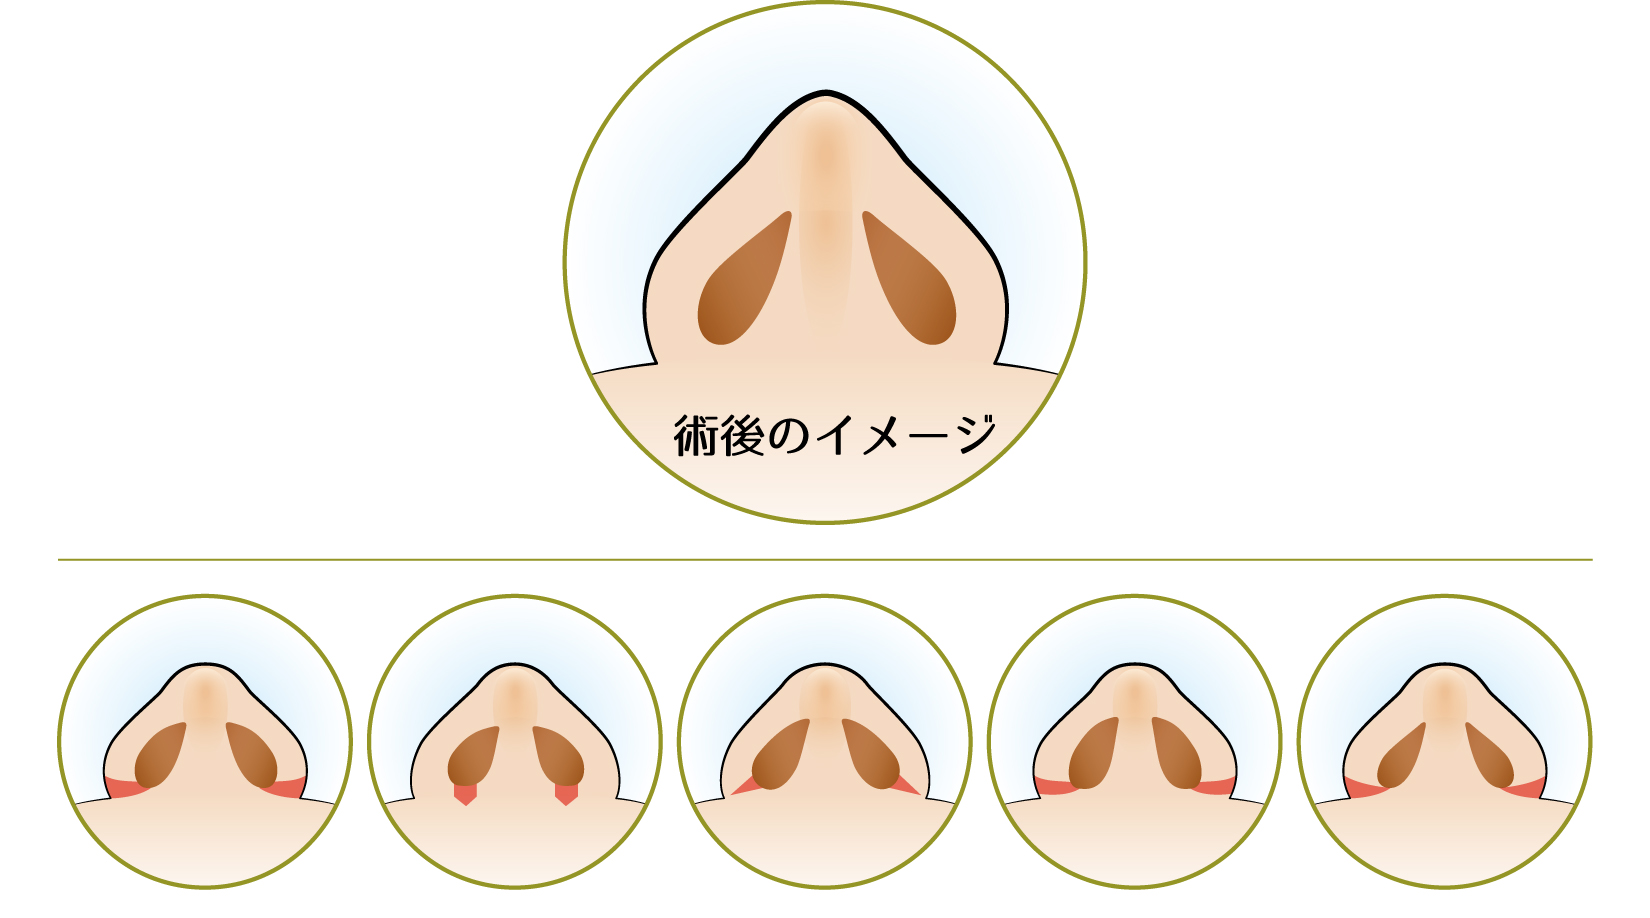 鼻翼縮小・小鼻縮小での理想の鼻の形の想定方法